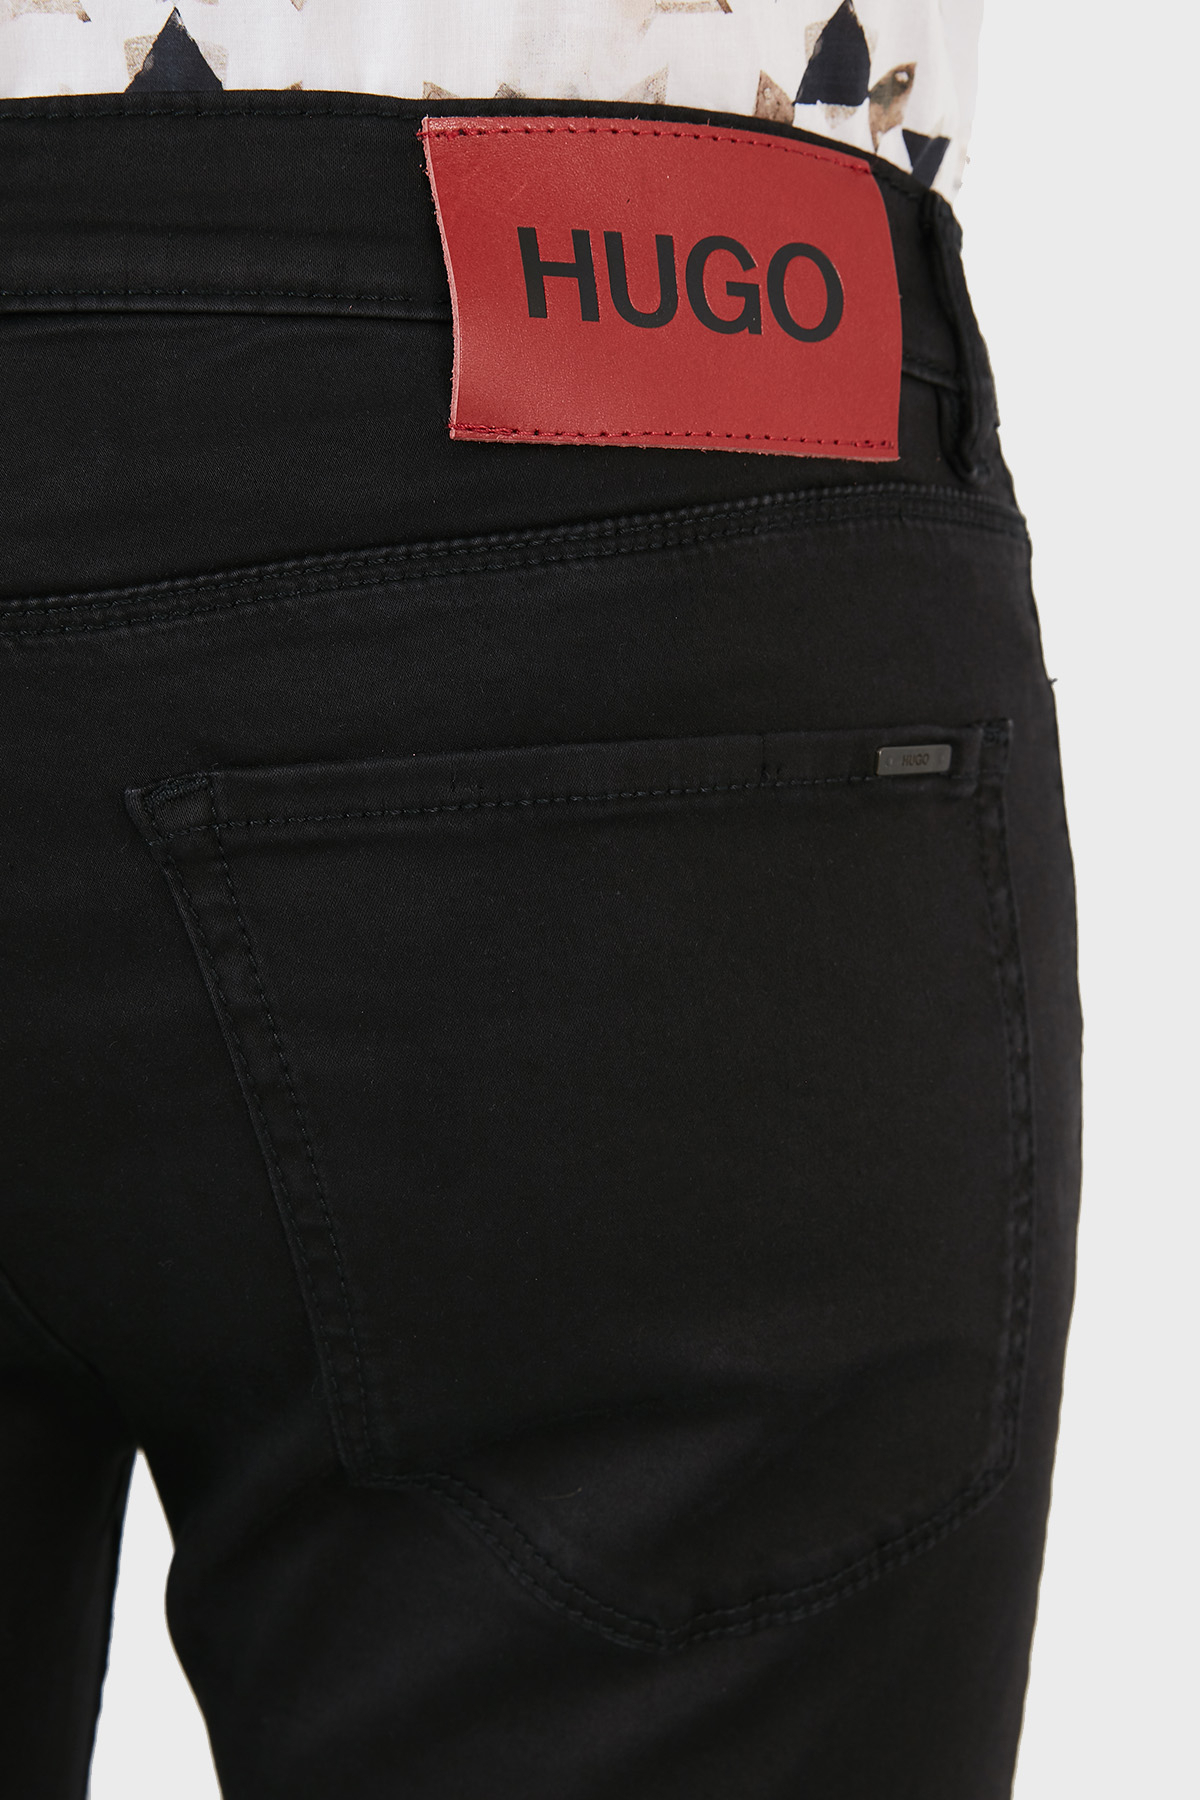 Hugo Boss Slim Fit Cepli Pamuklu Jeans Erkek Kot Pantolon 50459805 001 SİYAH